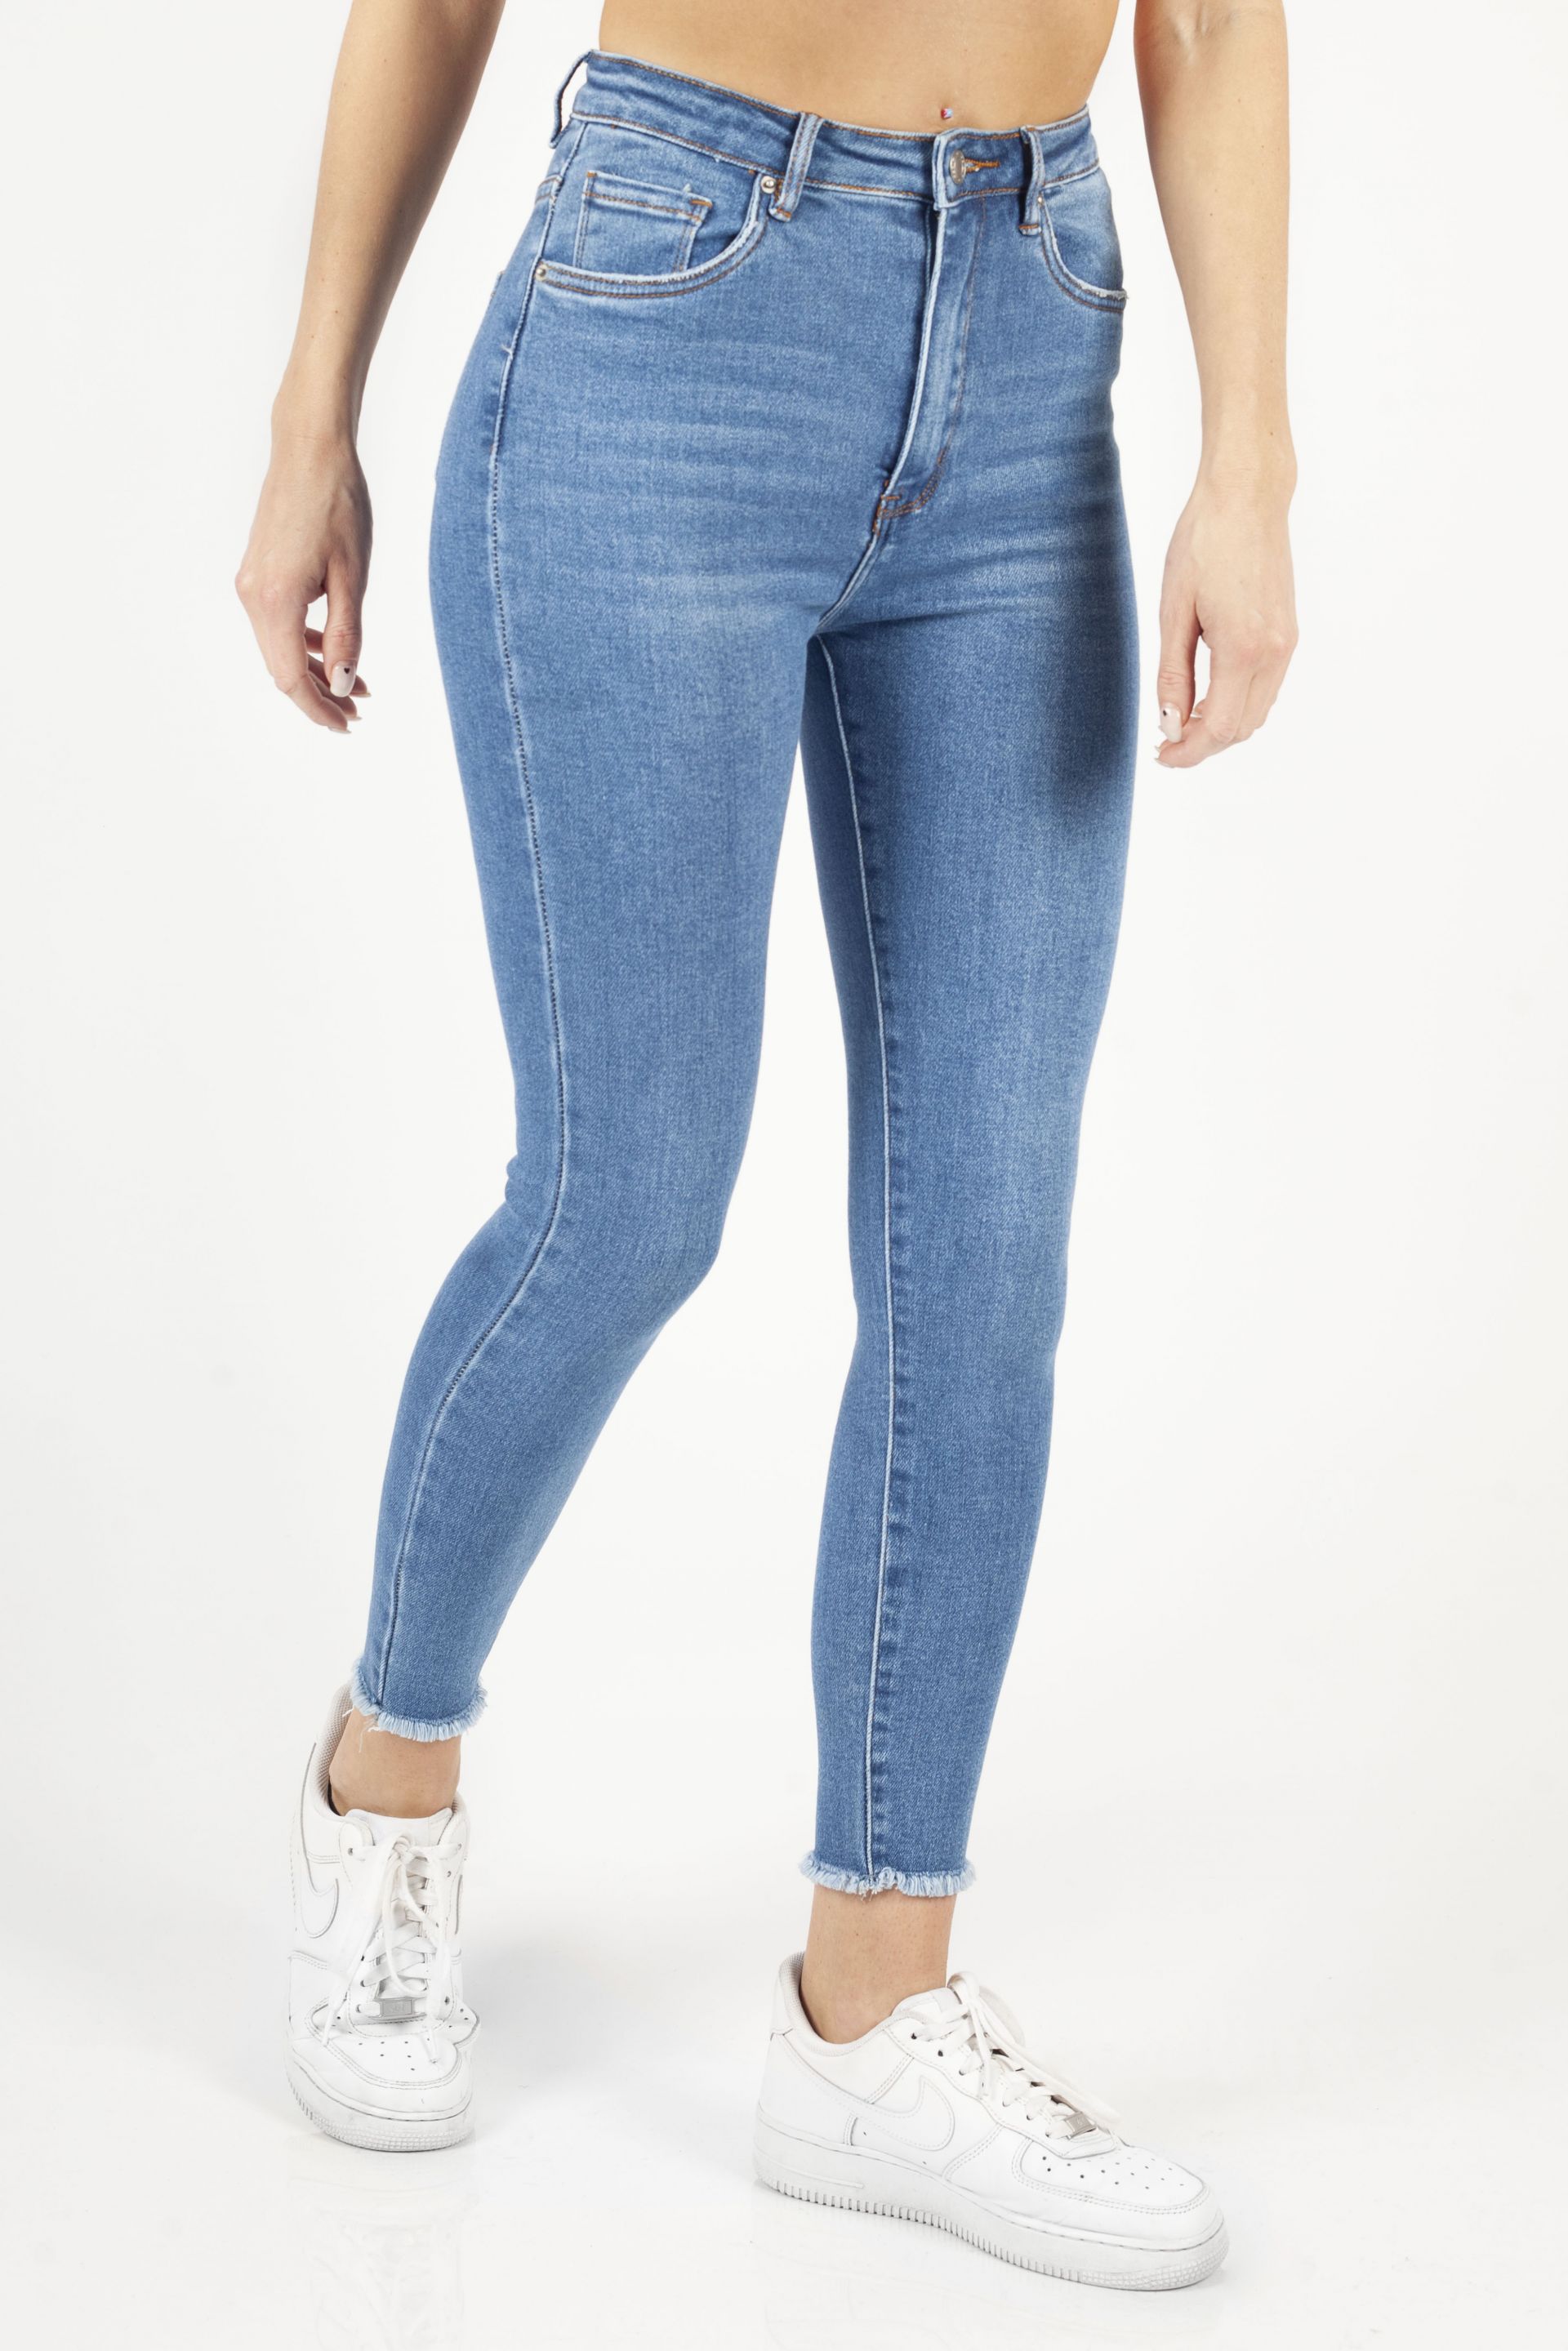 Jeans VS MISS SHW7605